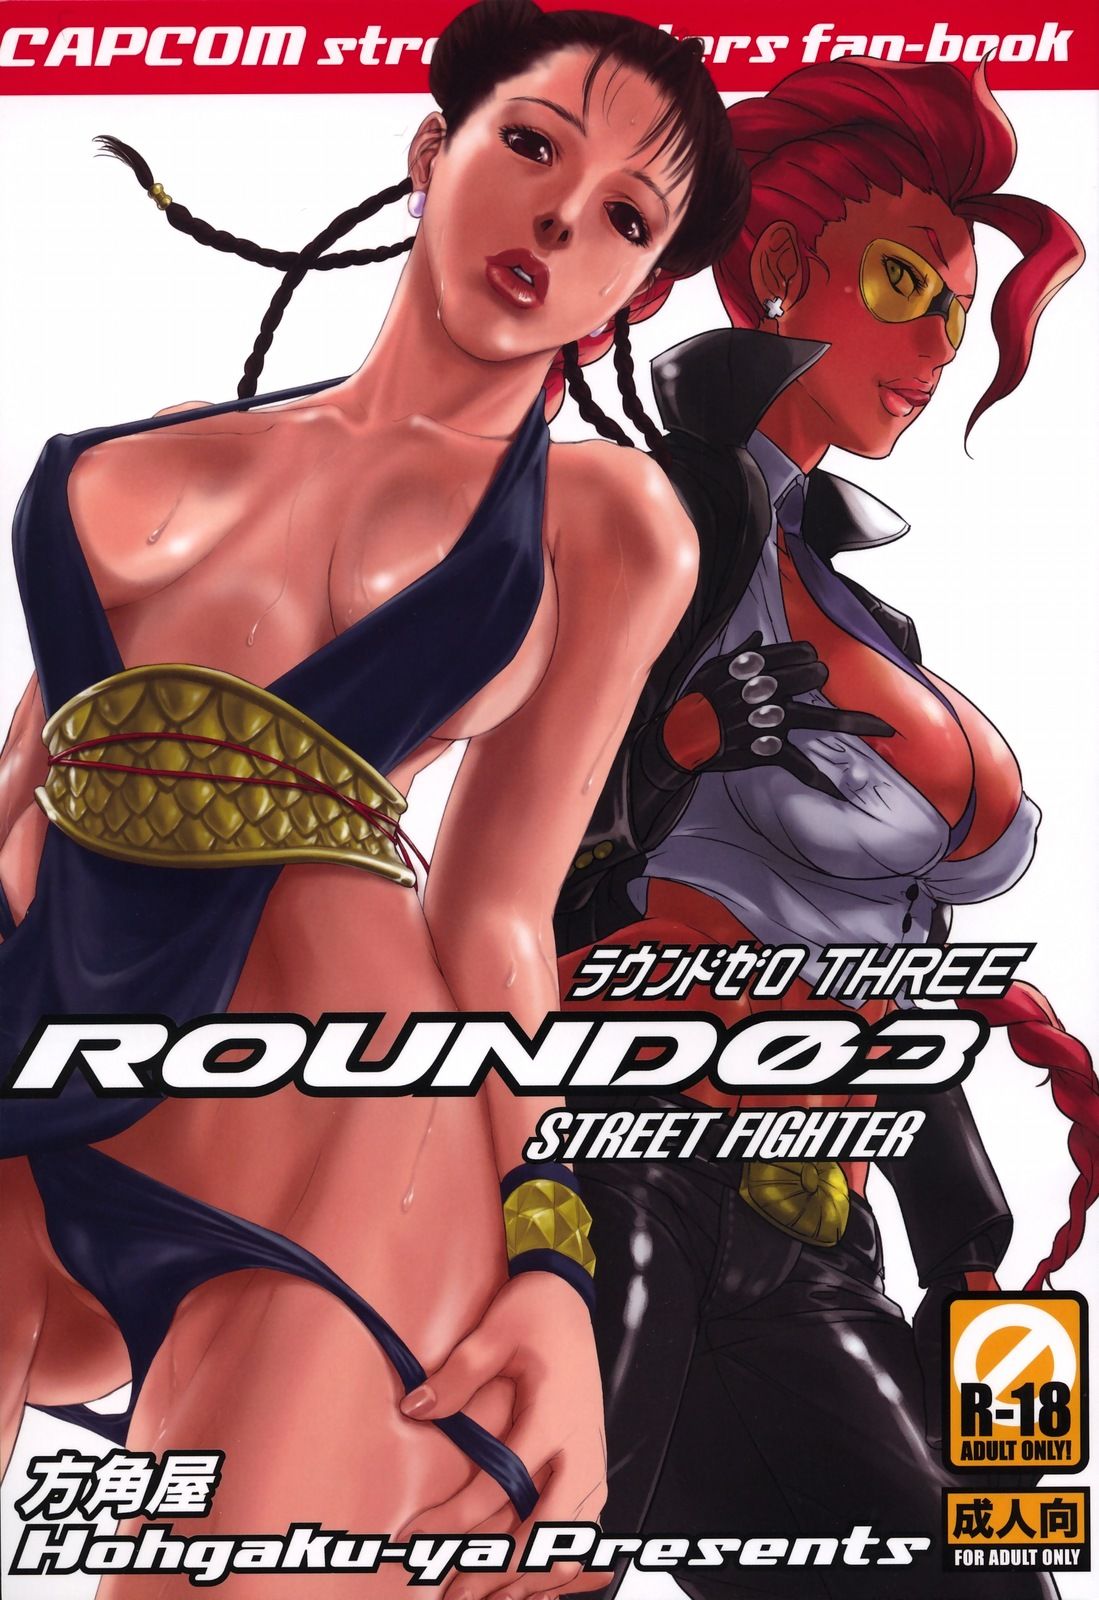 ROUND 03 (Street Fighter) - 0